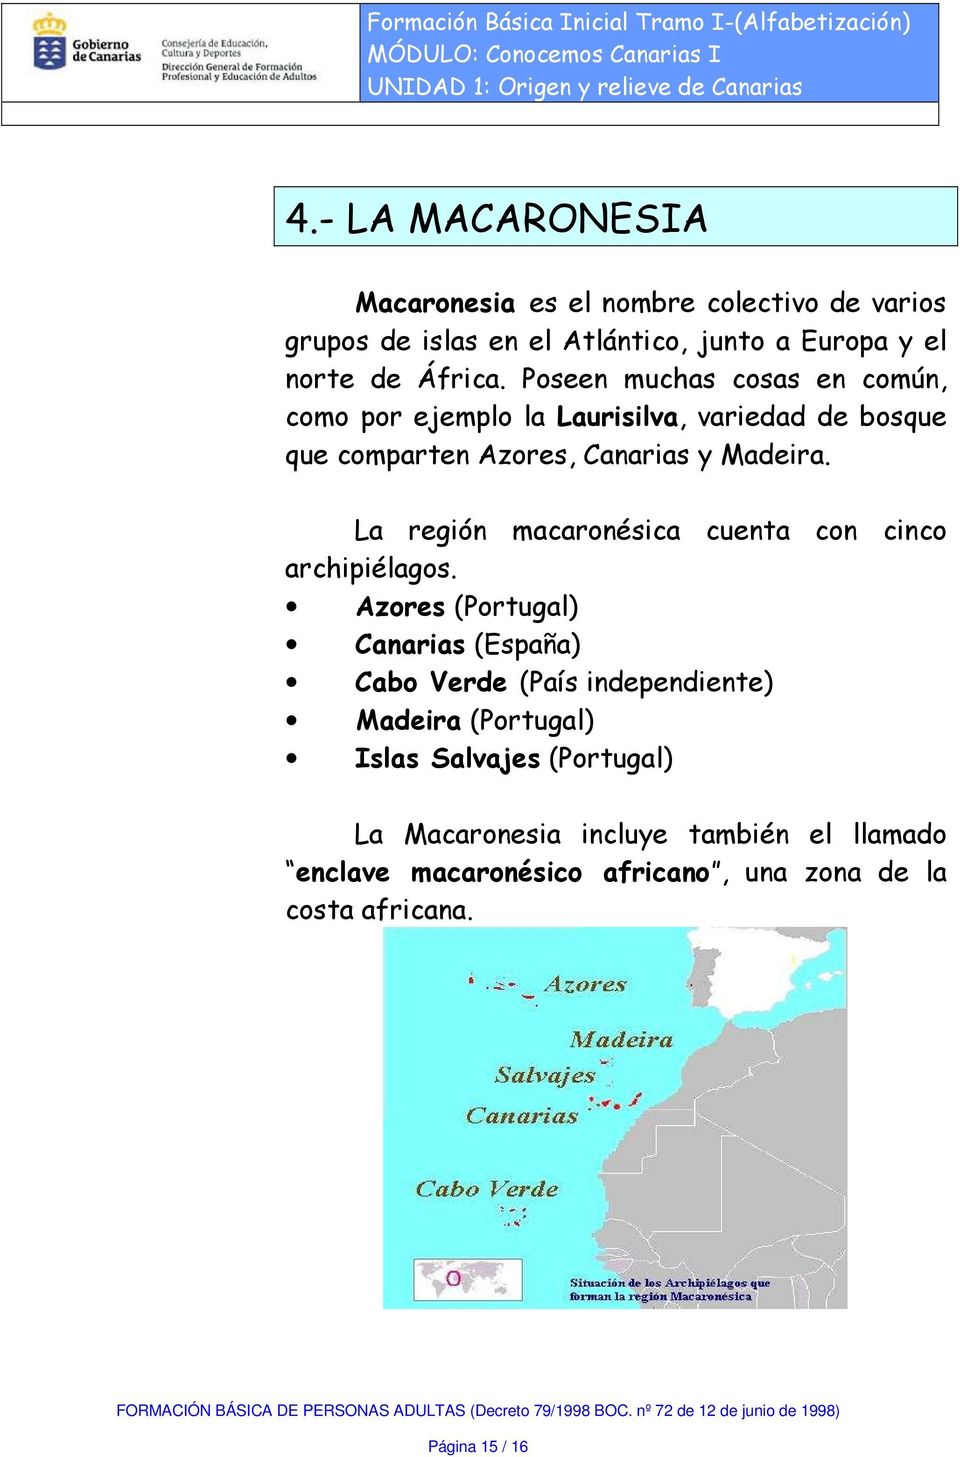 La región macaronésica cuenta con cinco archipiélagos.